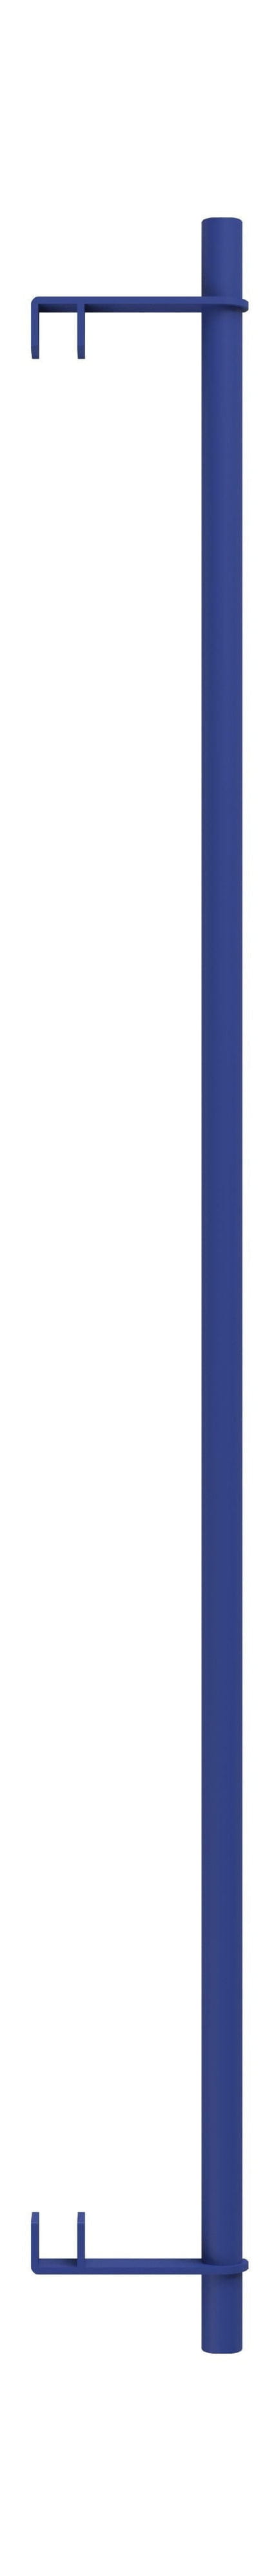 Moebe hyllsystem/vägghyllkläder bar 85 cm, djupblå